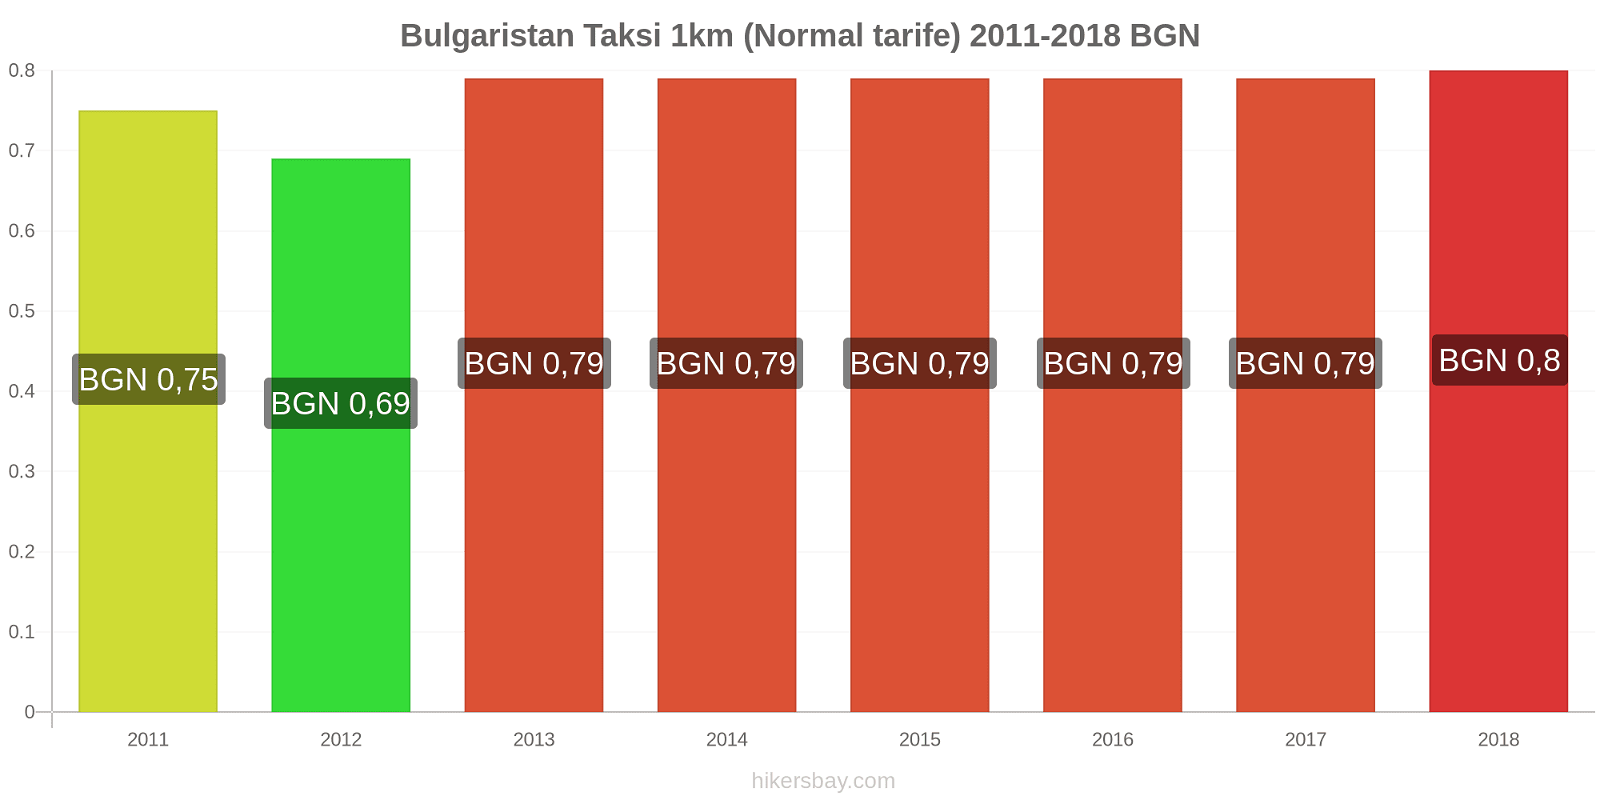 Bulgaristan fiyat değişiklikleri Taksi 1km (Normal tarife) hikersbay.com